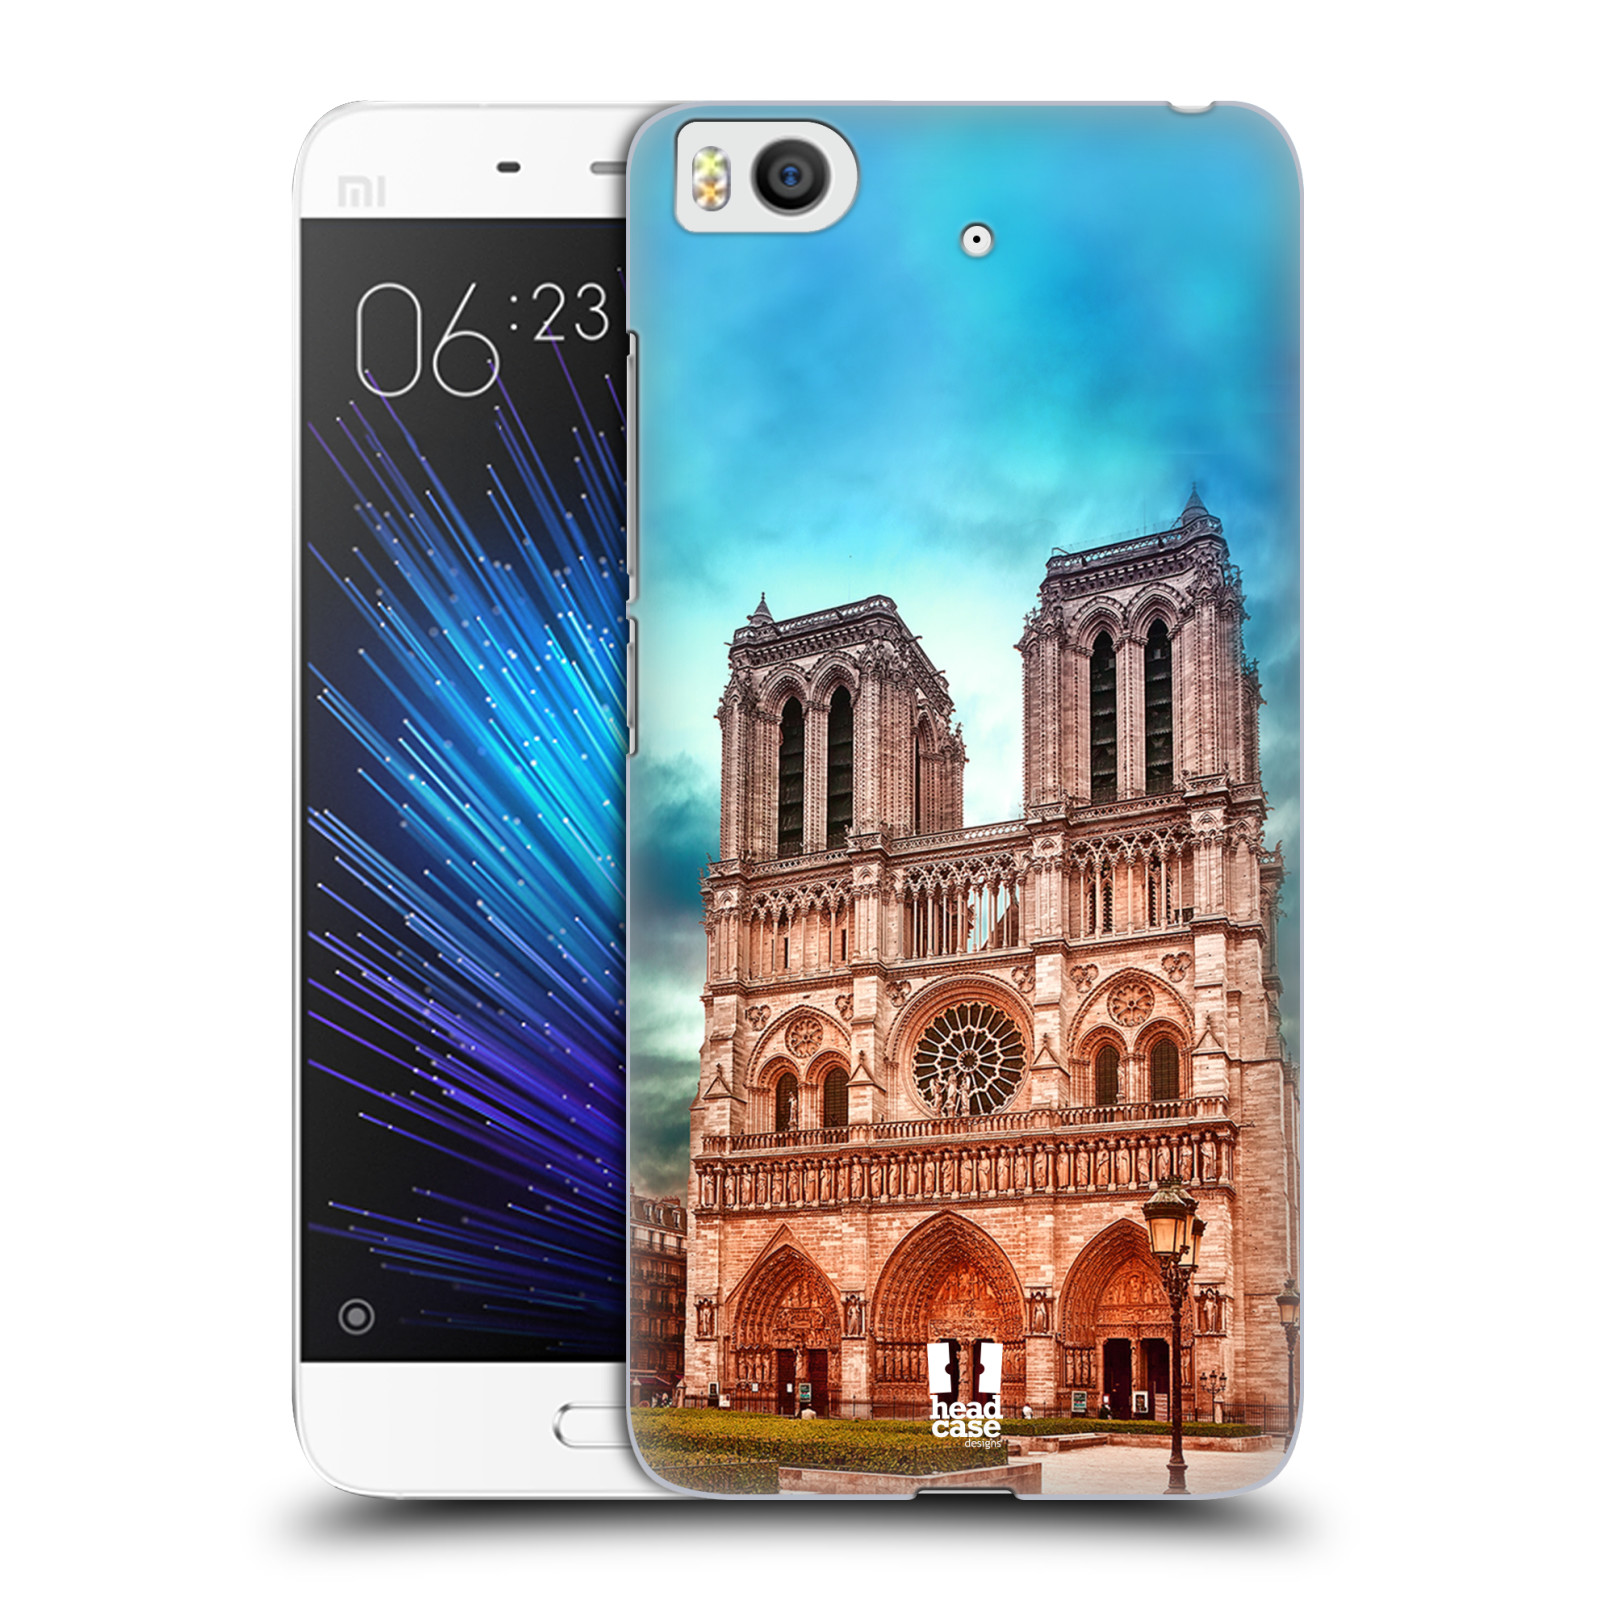 Pouzdro na mobil Xiaomi Mi5s - HEAD CASE - historická místa katedrála Notre Dame